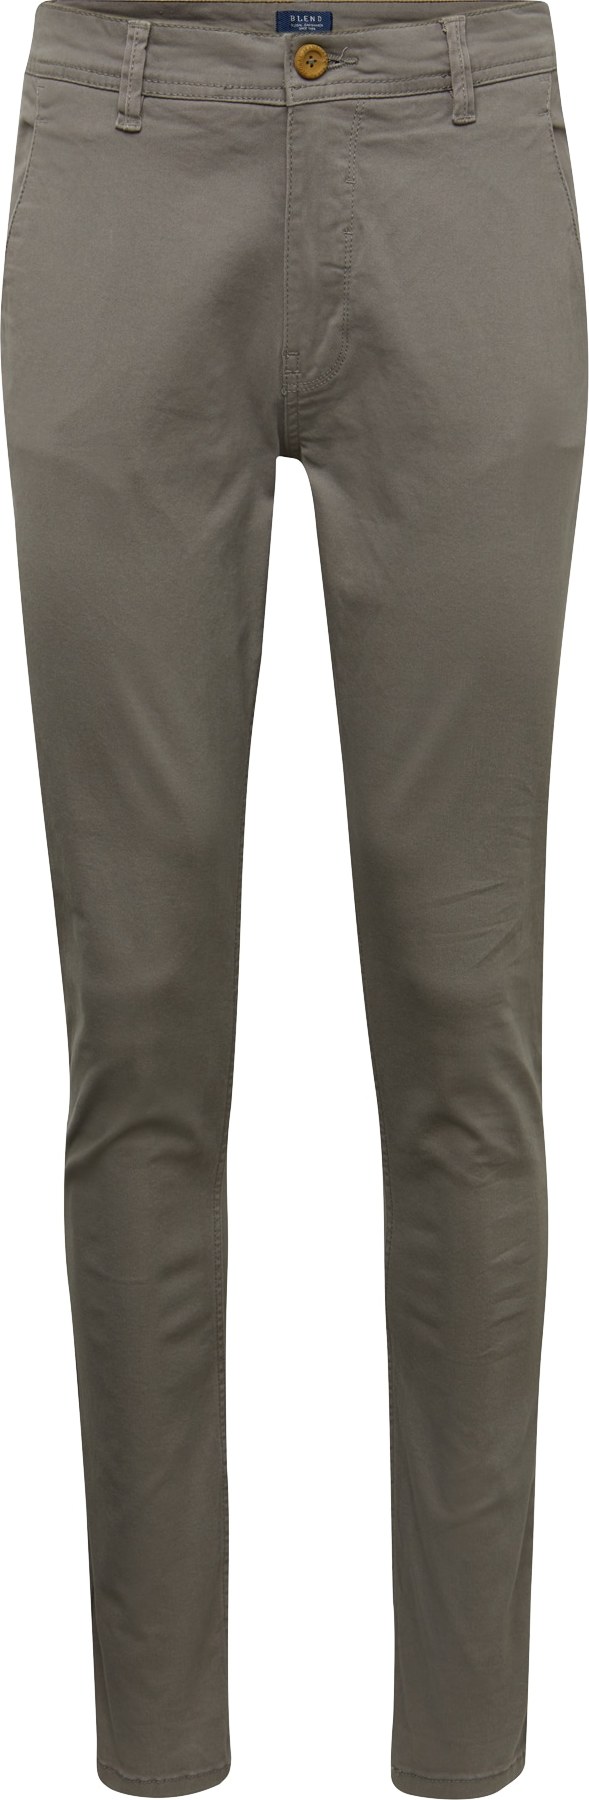 BLEND Chino kalhoty 'Noos' barvy bláta